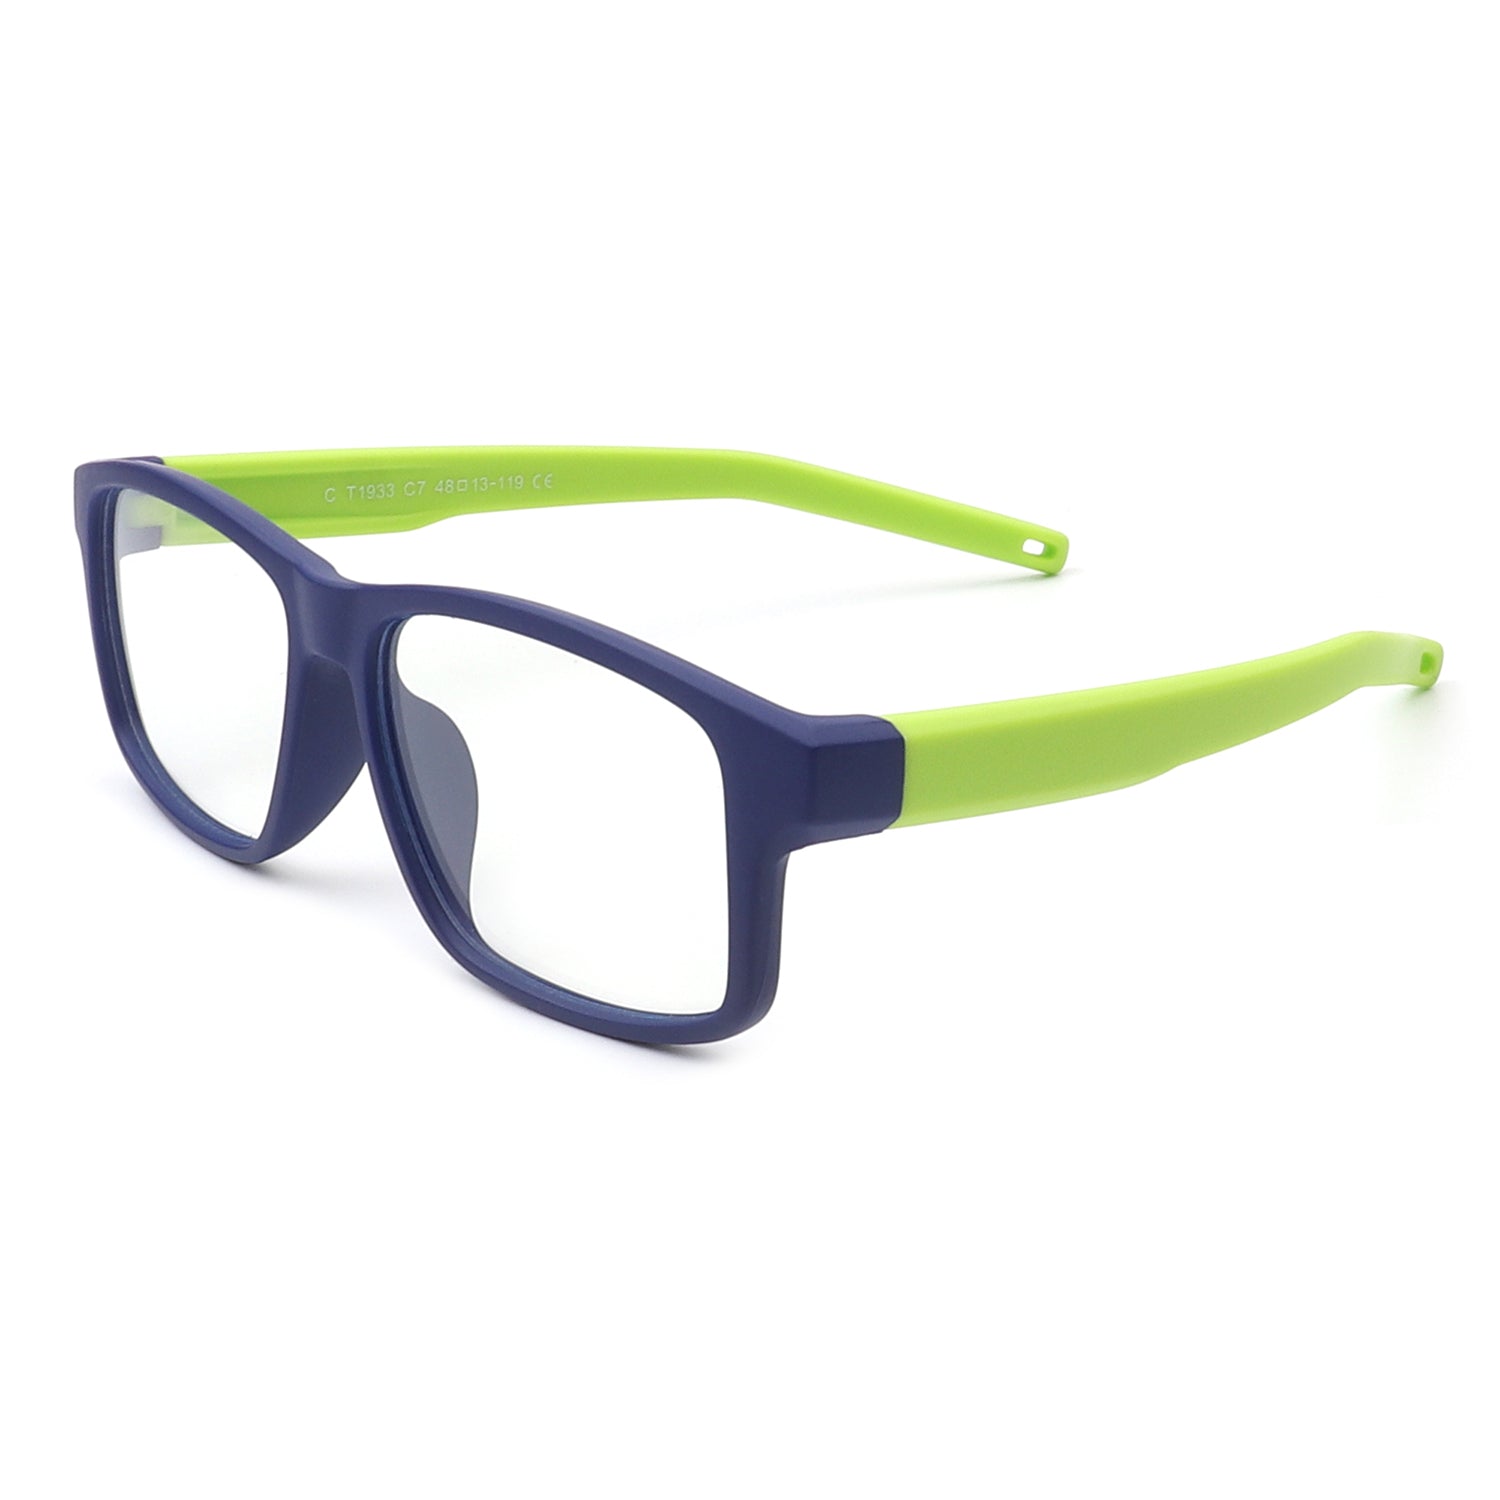 HK1012 - Children Rectangle Classic Blue Light Blocker Glasses